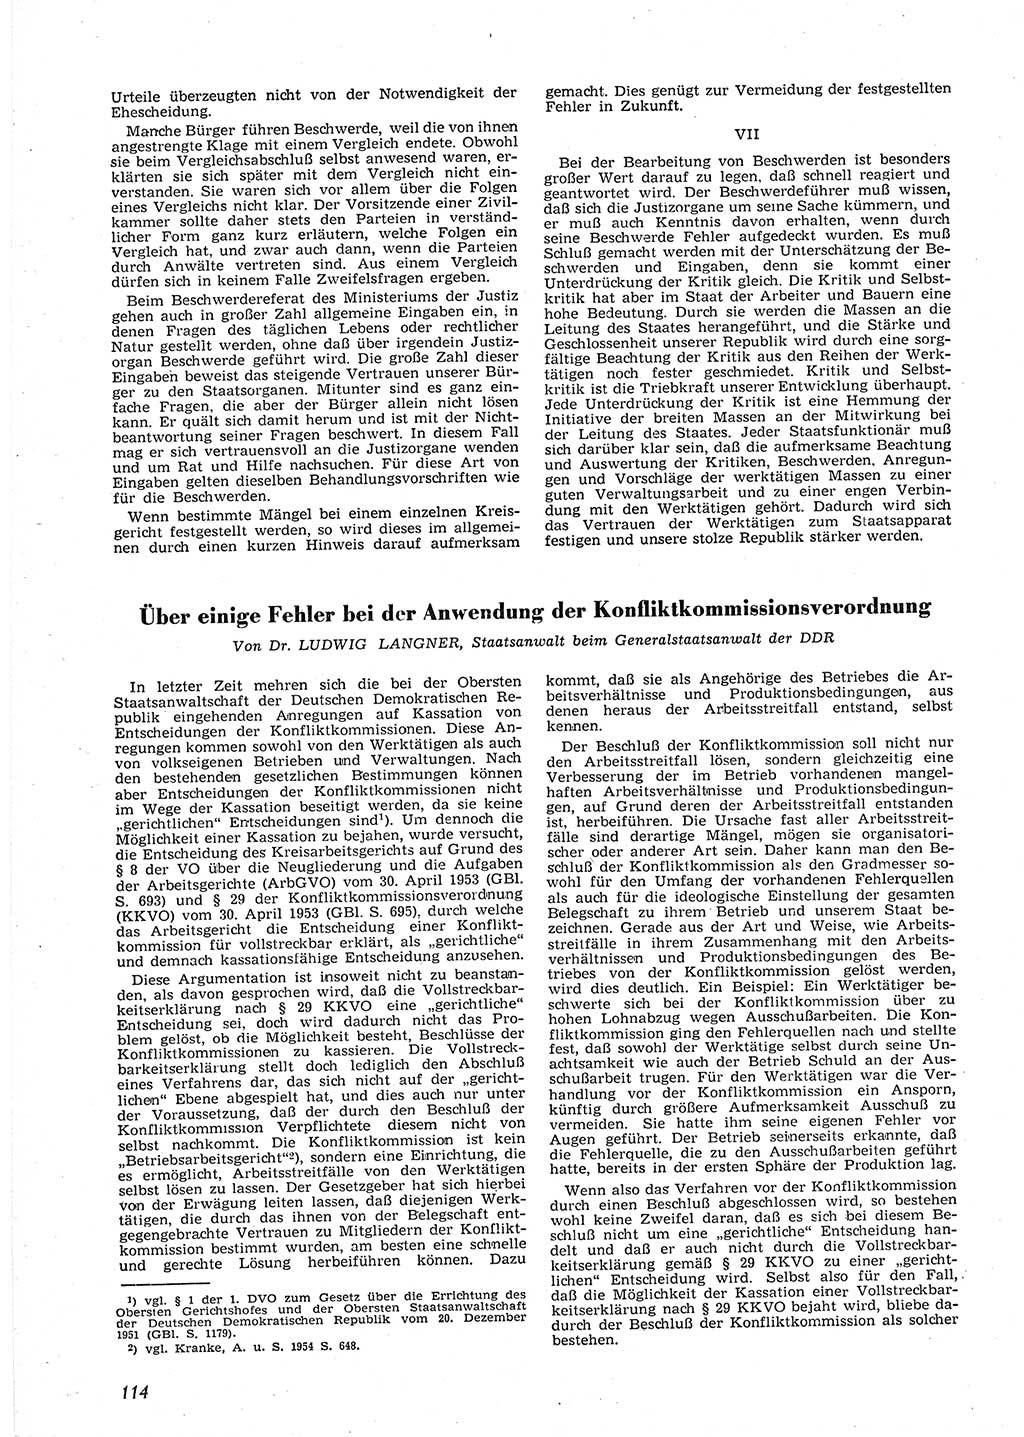 Neue Justiz (NJ), Zeitschrift für Recht und Rechtswissenschaft [Deutsche Demokratische Republik (DDR)], 9. Jahrgang 1955, Seite 114 (NJ DDR 1955, S. 114)